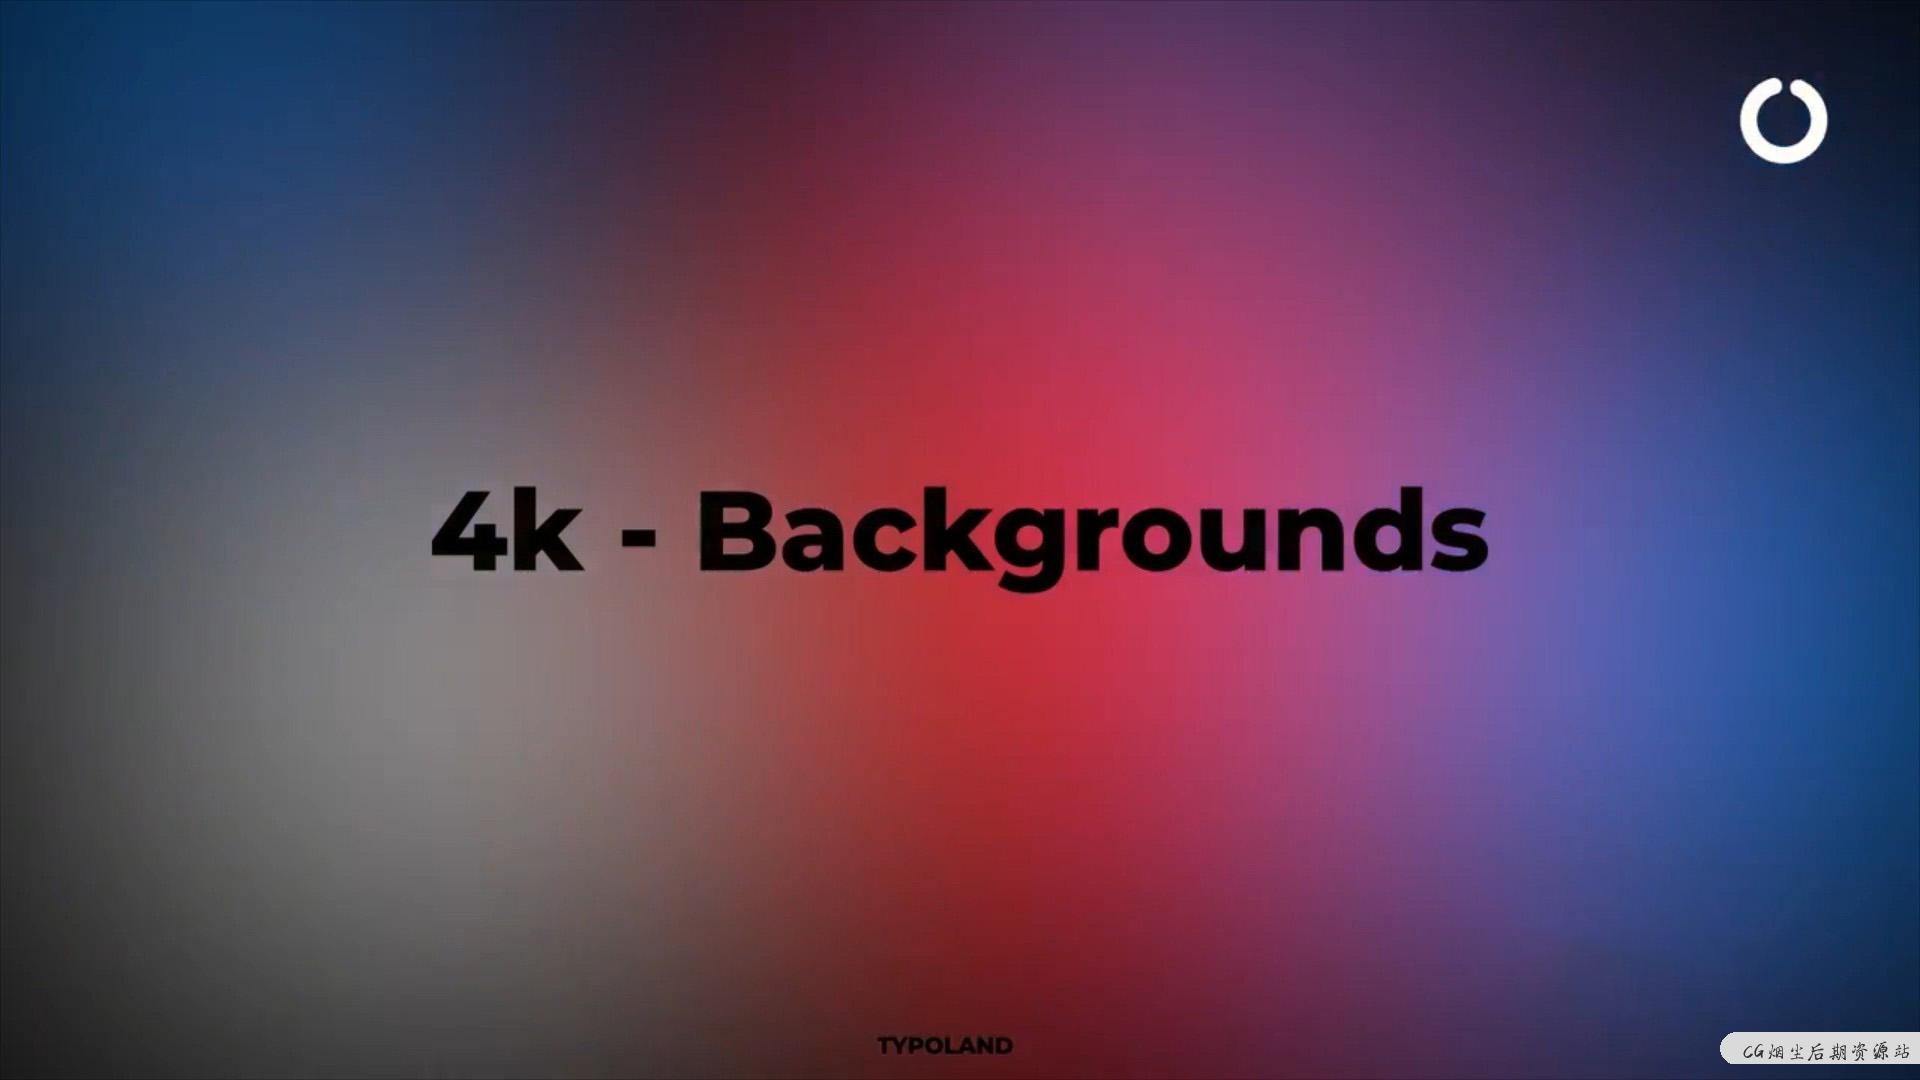 fcpx插件 4K绚丽动态背景制作工具 可自定义颜色 4k backgrounds